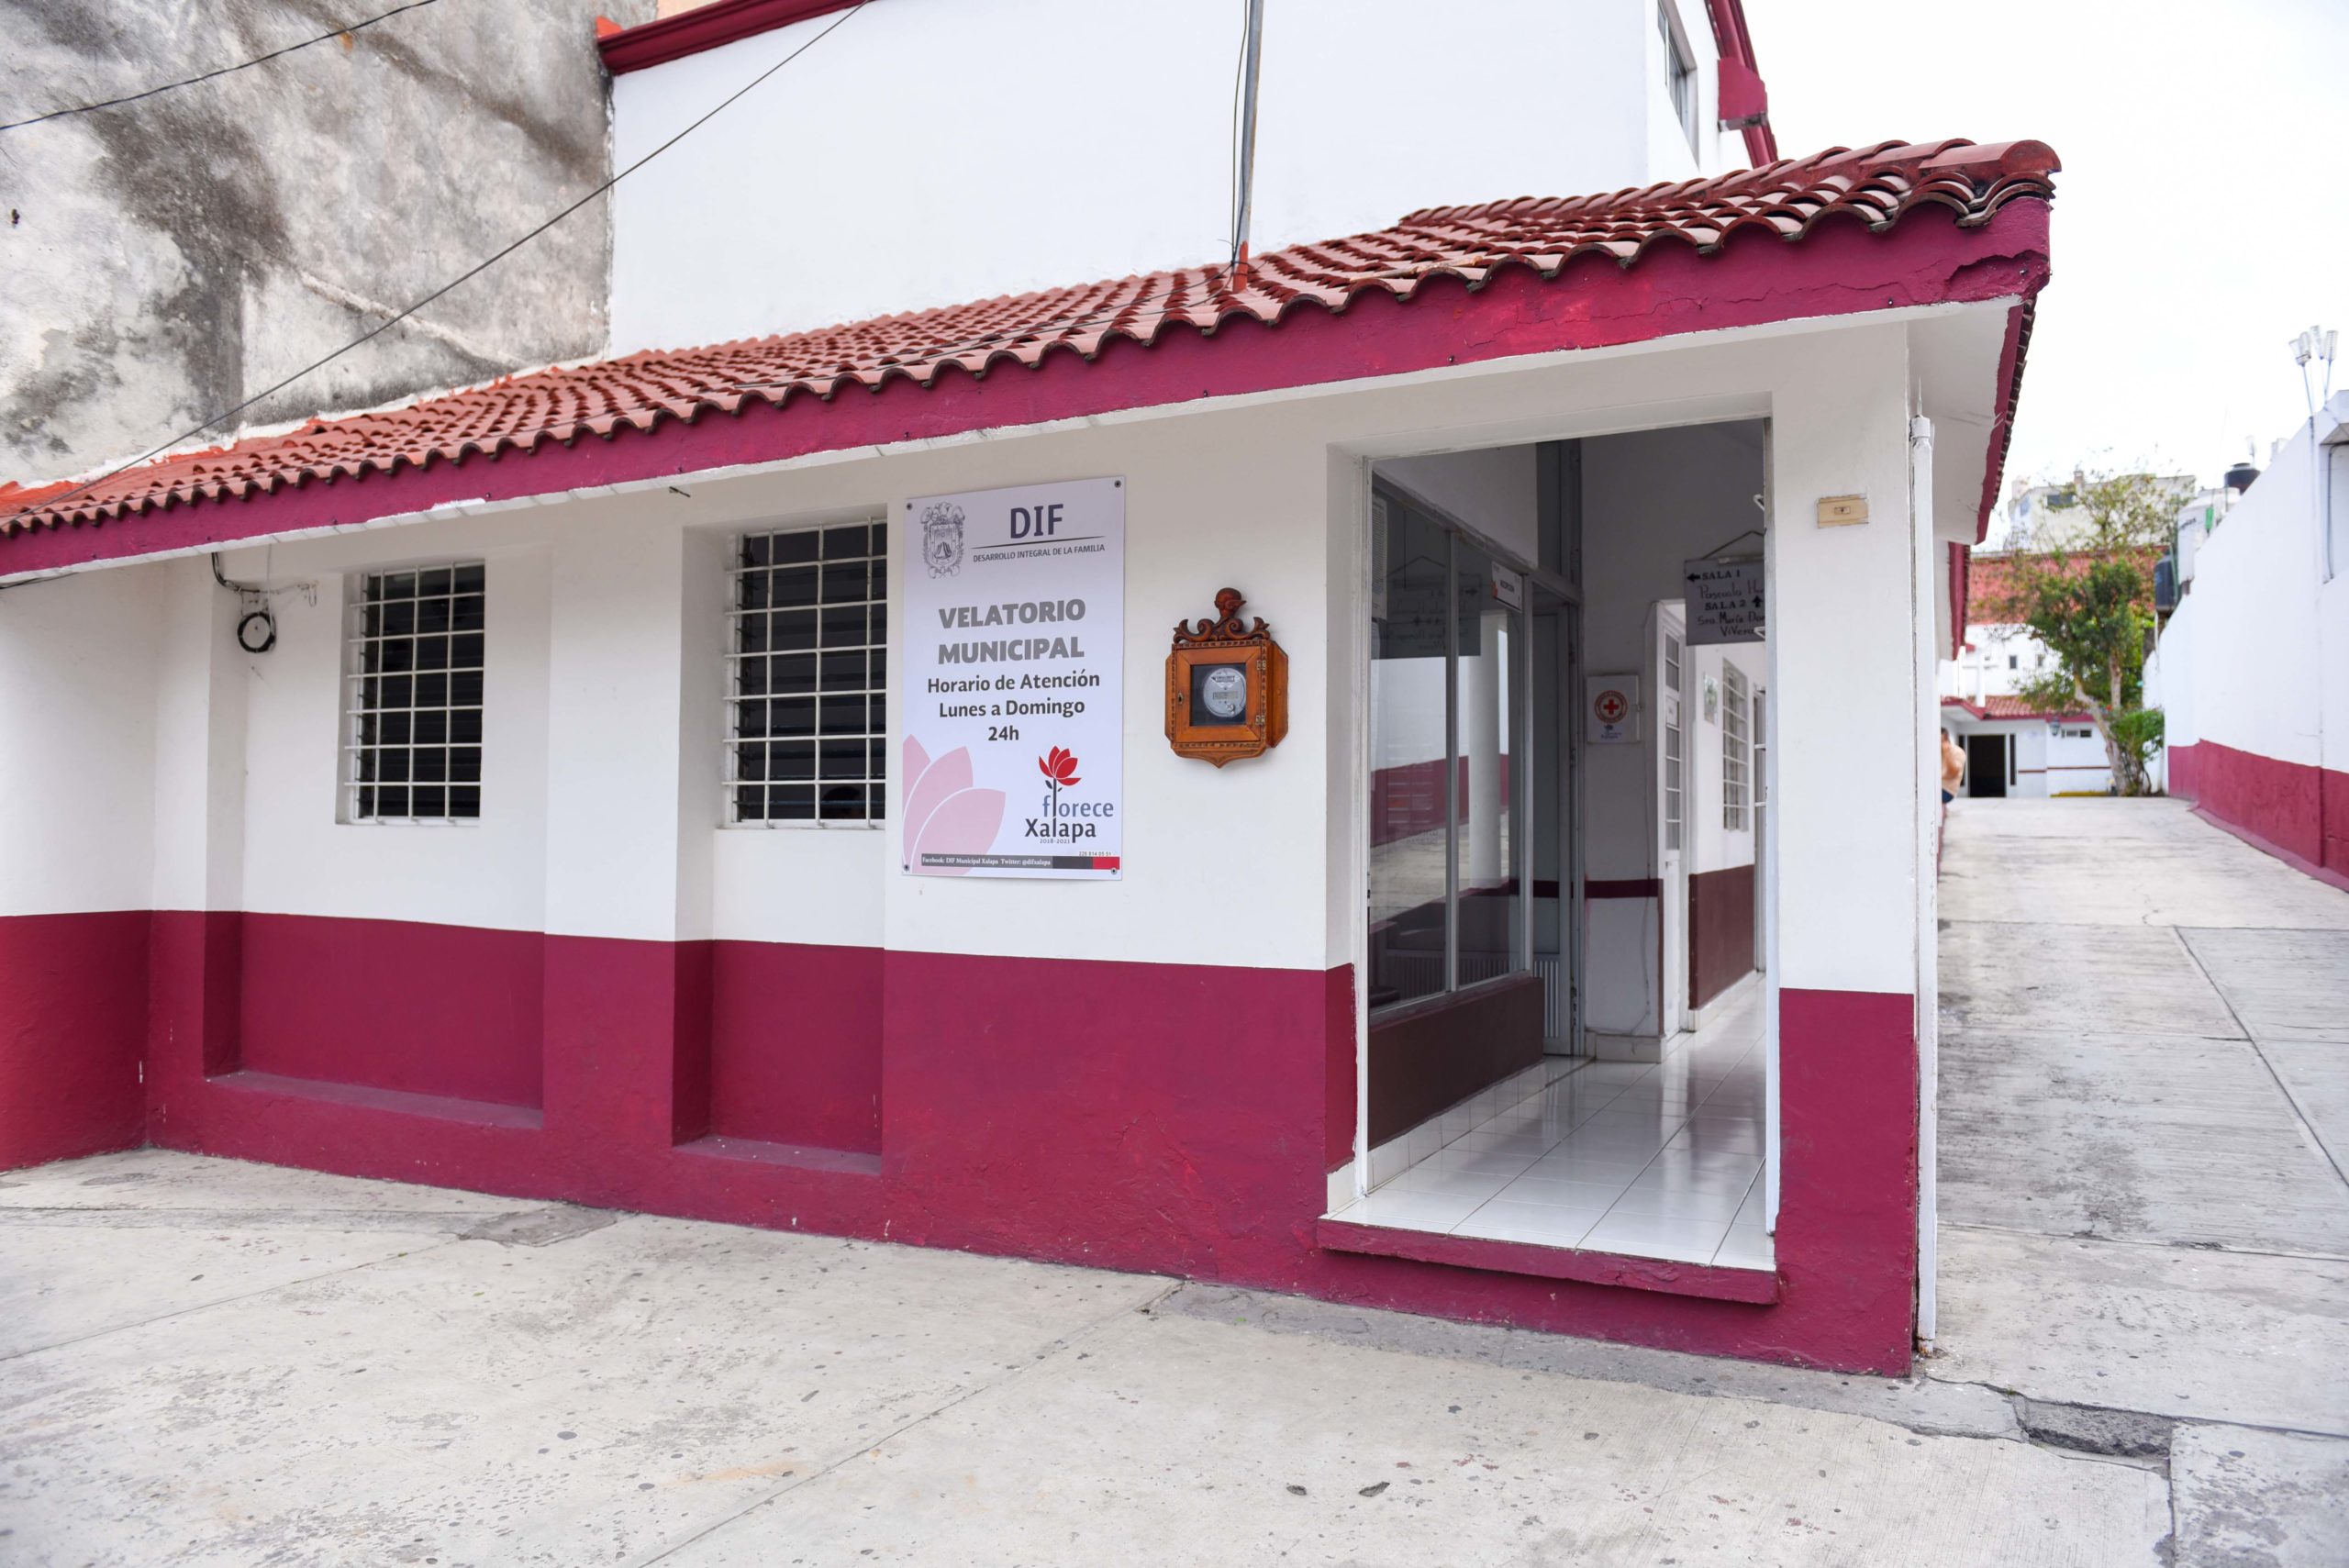 Rehabilitaron instalaciones del Velatorio municipal de Xalapa